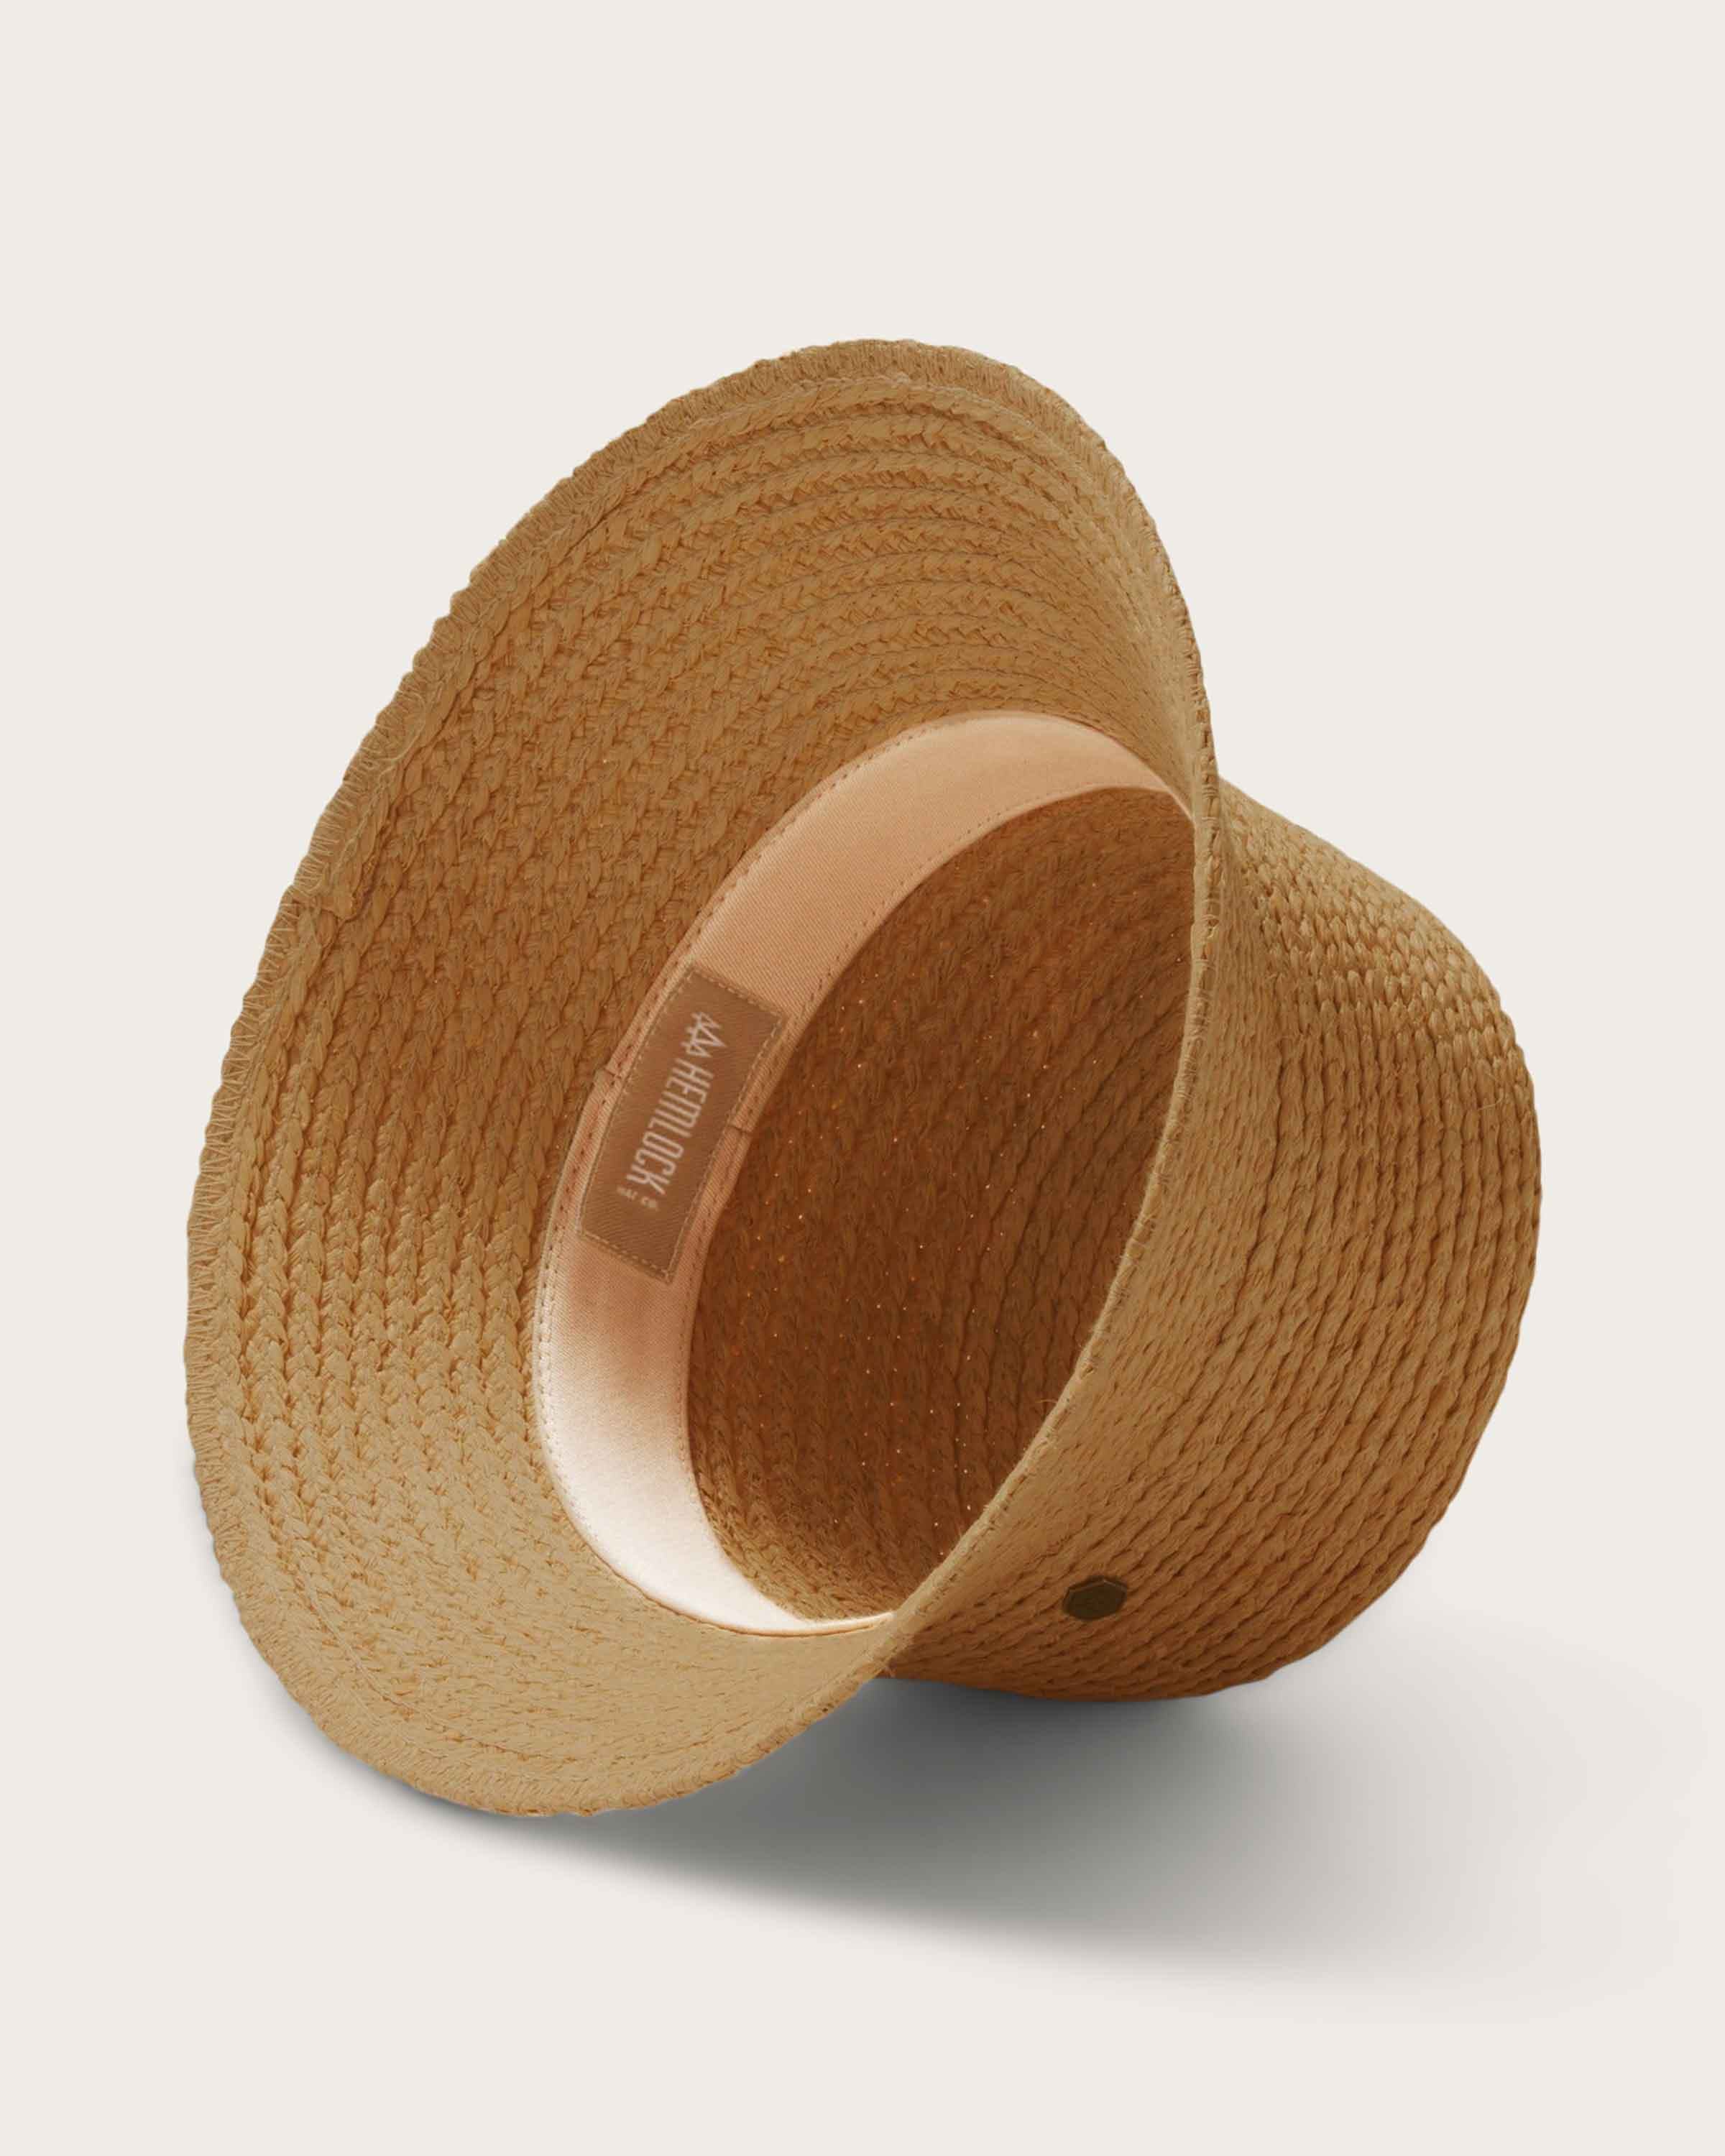 Haven Bucket in Fawn - undefined - Hemlock Hat Co. Straw Bucket Hats